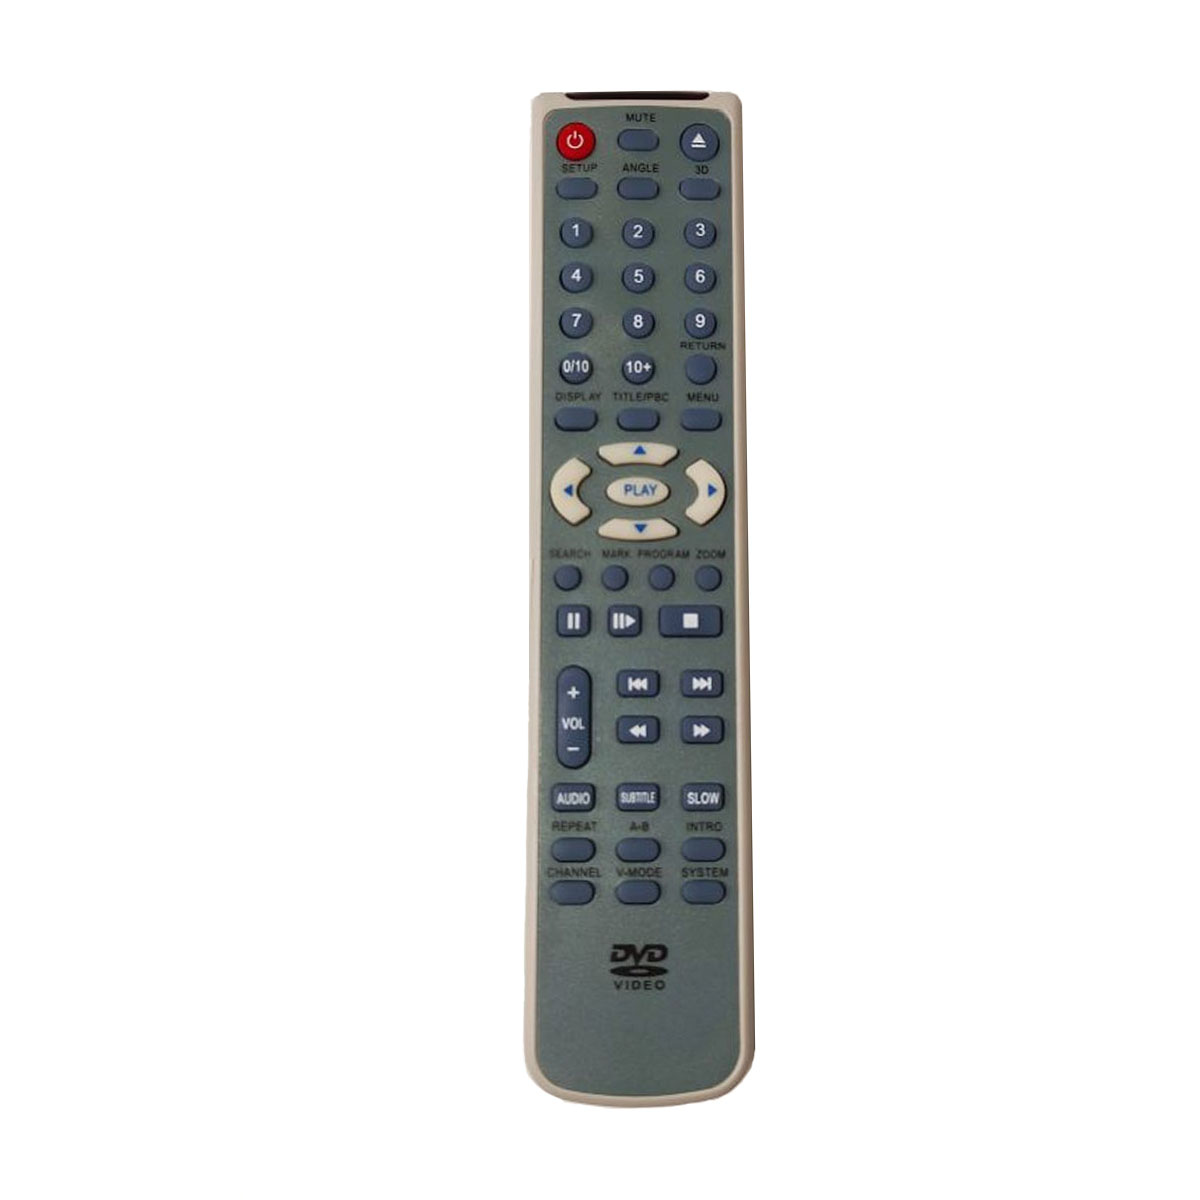 Пульт ДУ DV-700S для DVD плееров DAEWOO, цвет серо синий